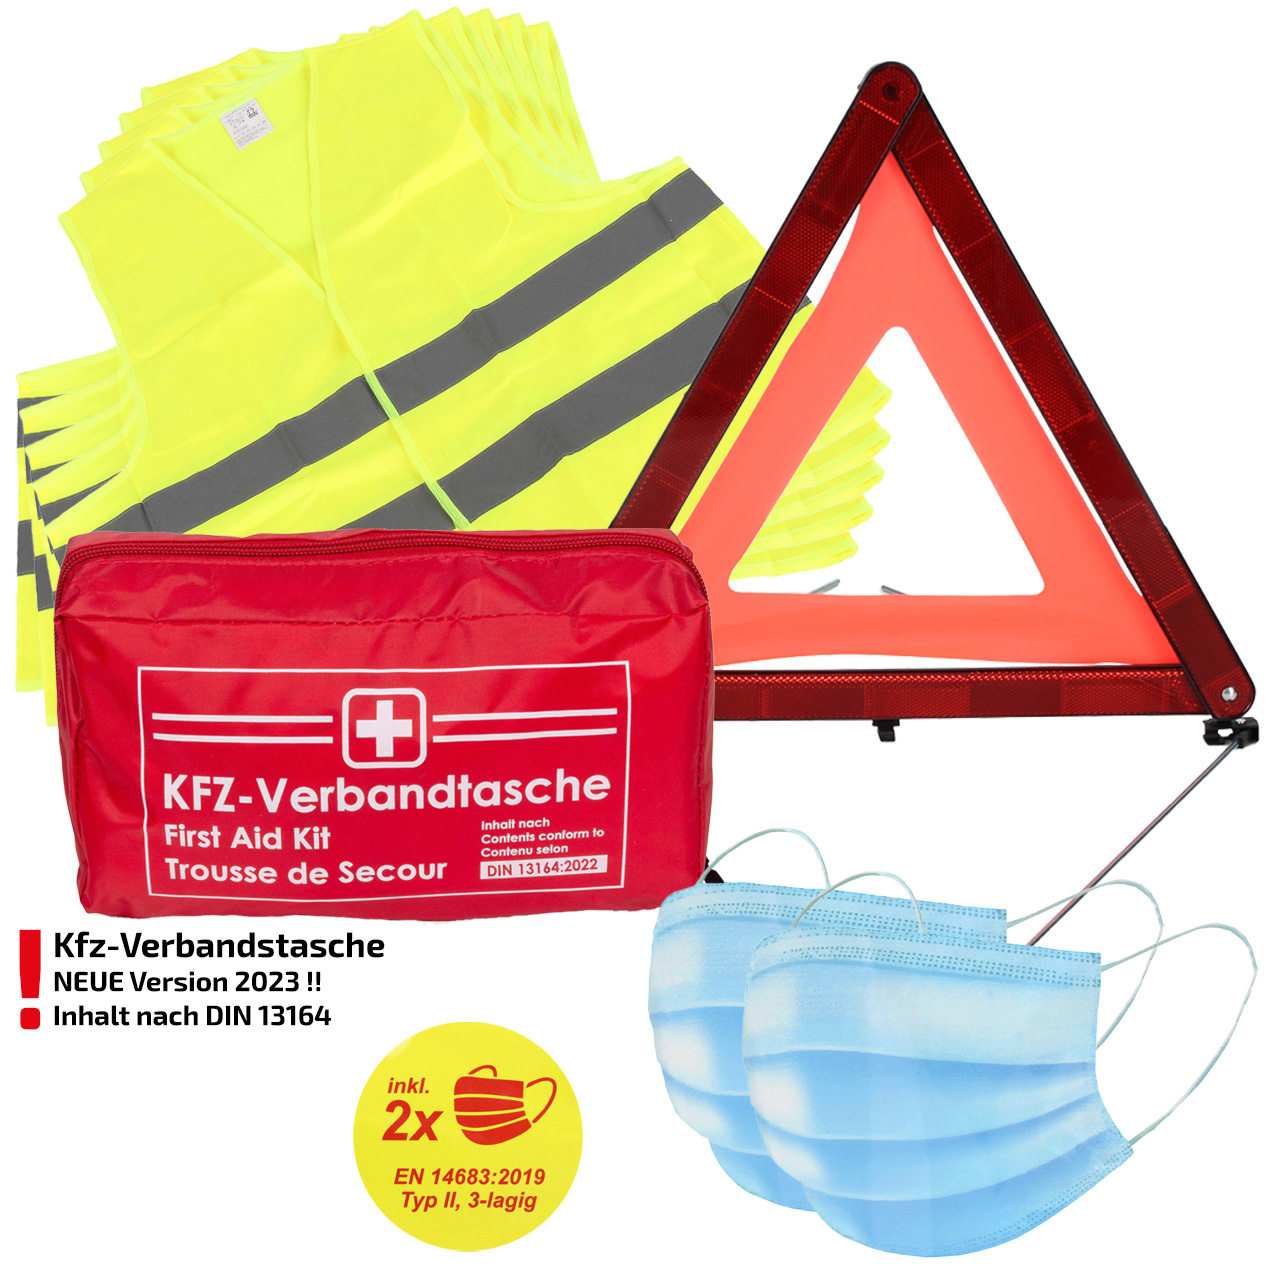 Verbandtasche Erste-Hilfe DIN13164-2022 (MHD 08.2028) + 5x Warnweste GELB + Warndreieck